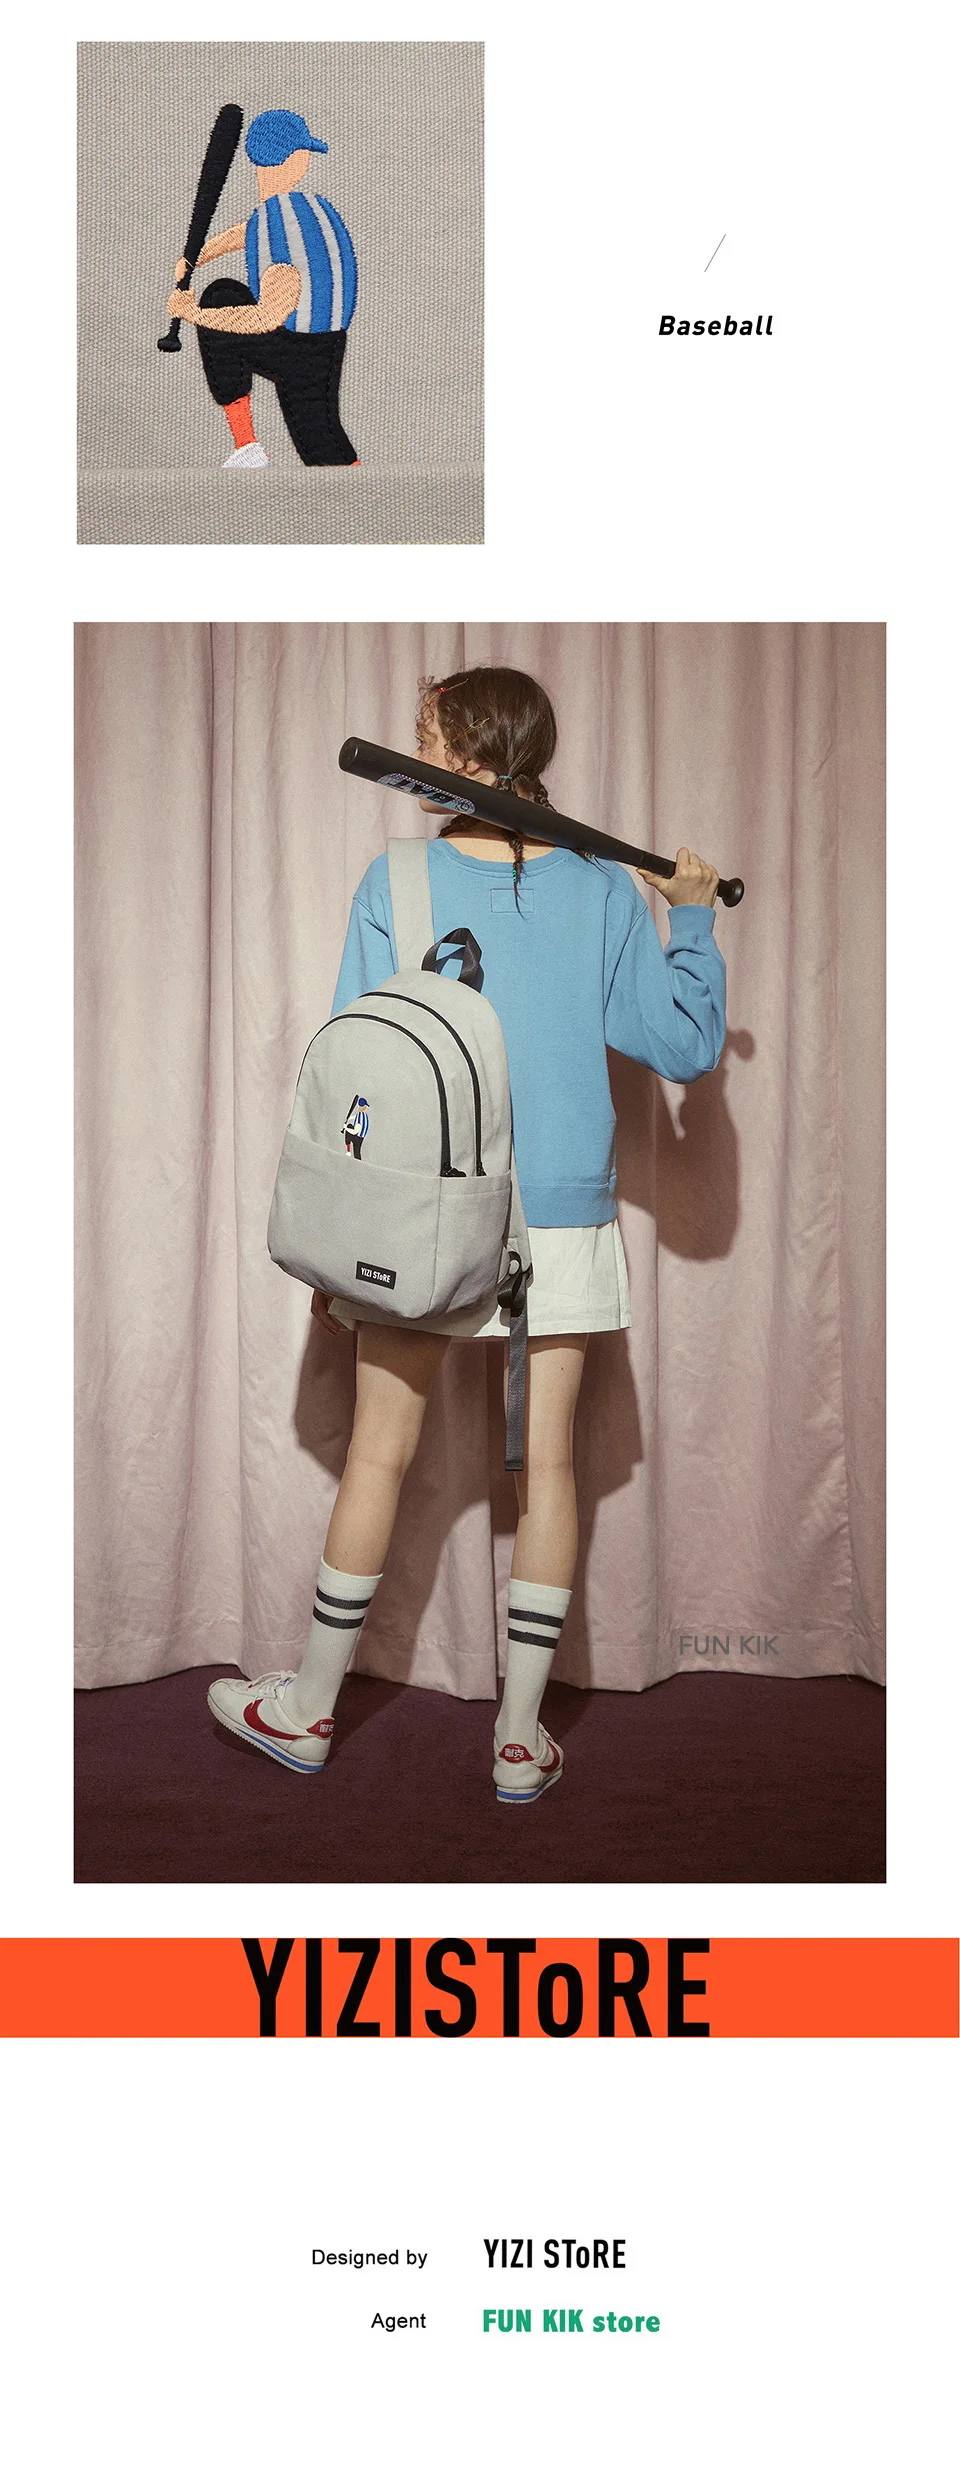 YIZISTORE оригинальные повседневные брезентовые Смешные рюкзаки для мальчиков и девочек, экономичные школьные сумки в легкой атлетике серии 1(FUN KIK